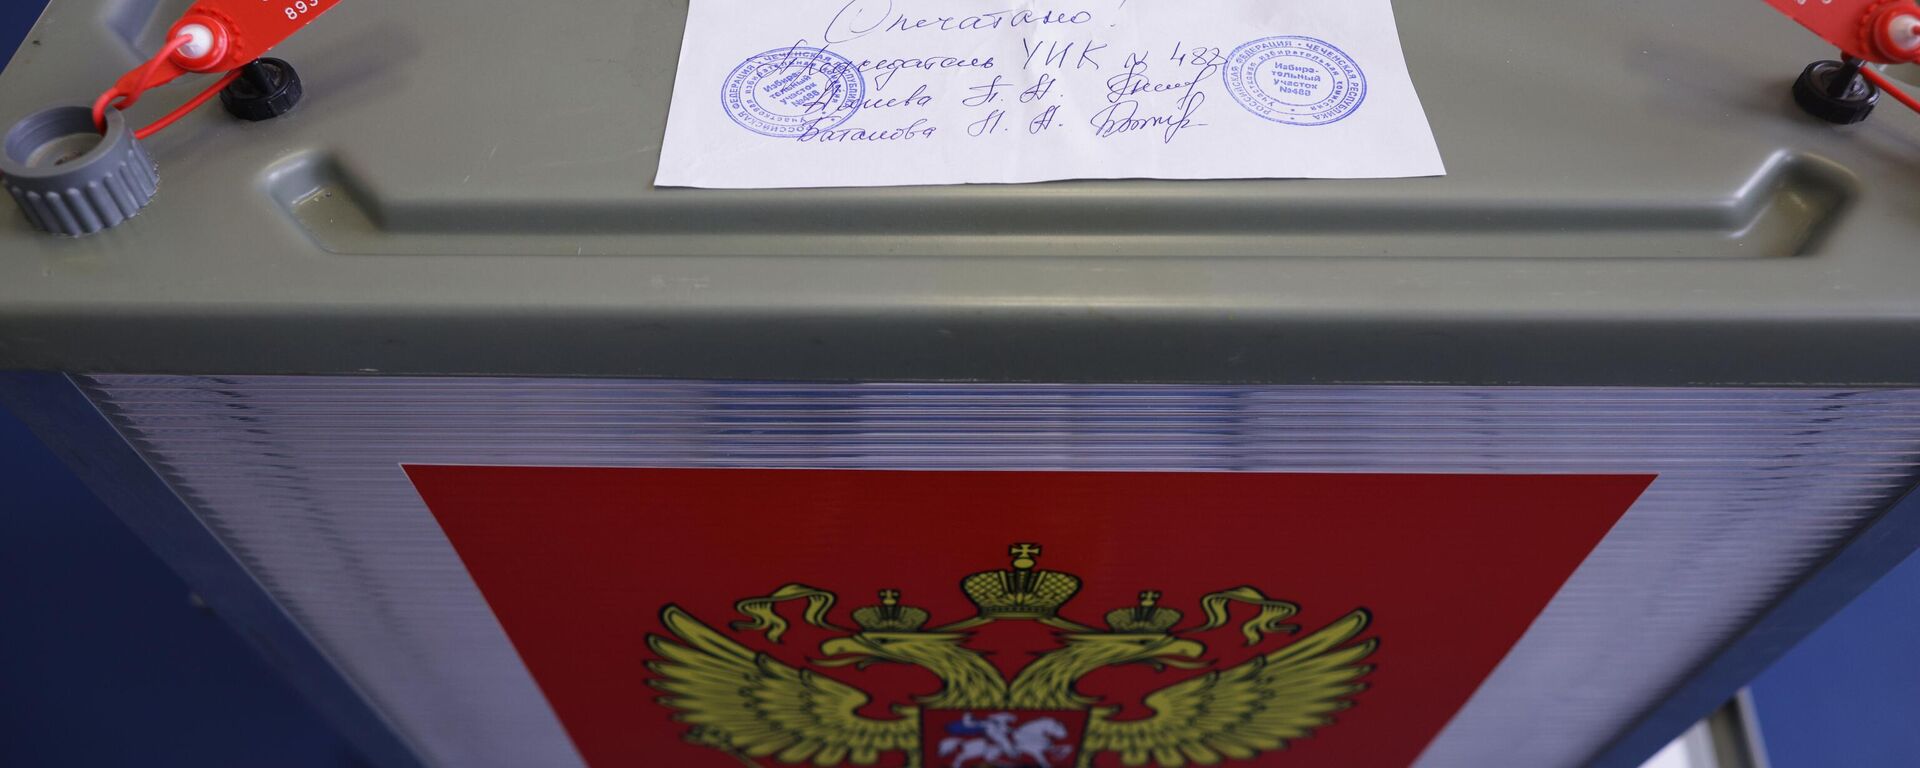 Избирательная урна на избирательном участке на выборах в России - Sputnik Латвия, 1920, 22.09.2021